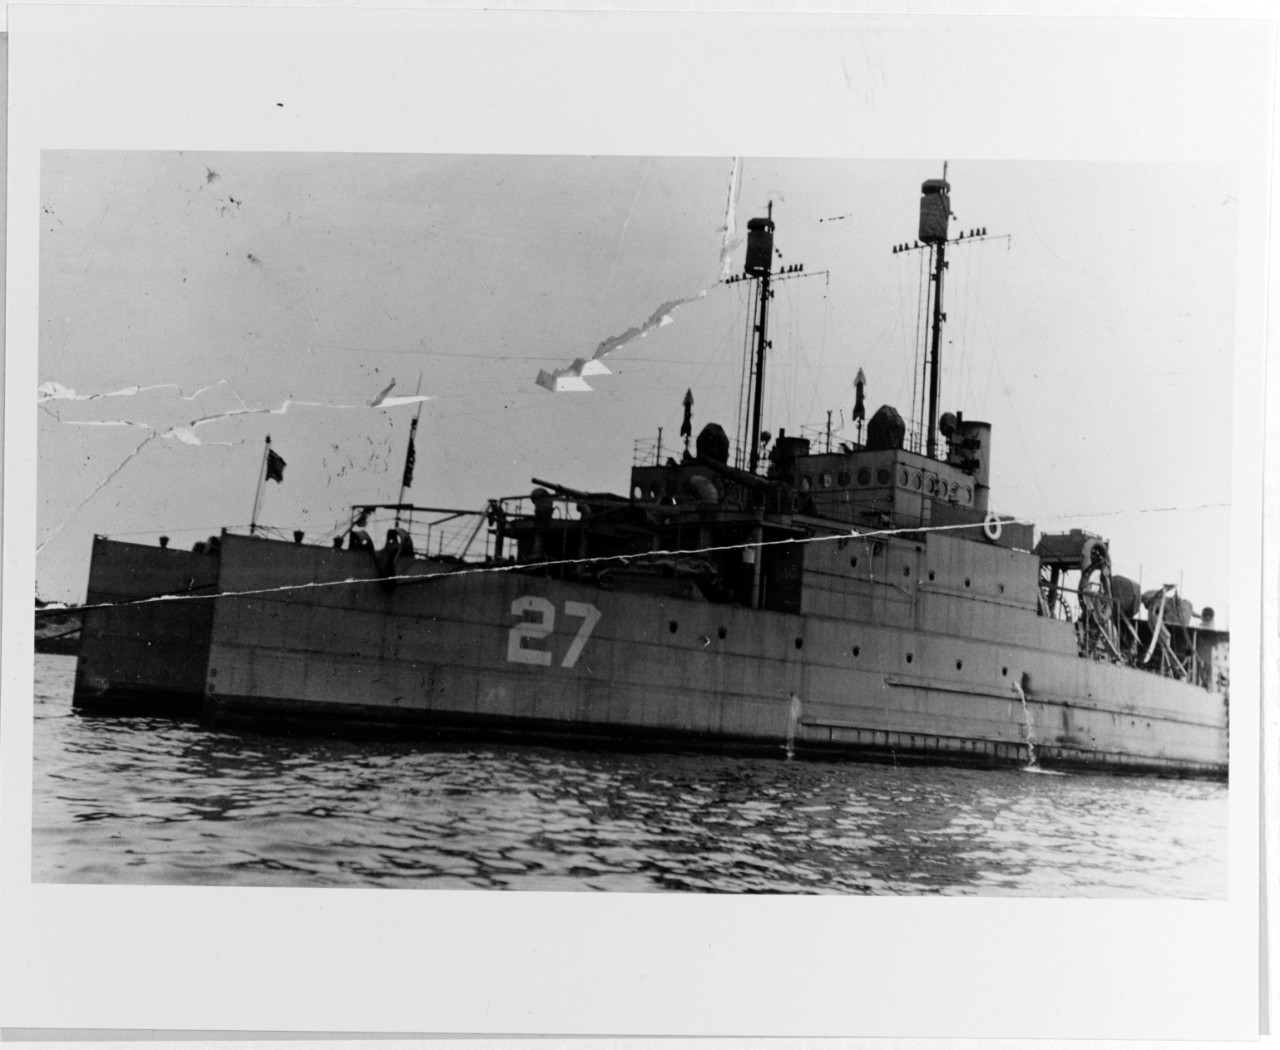 USS EAGLE 27 (PE-27)